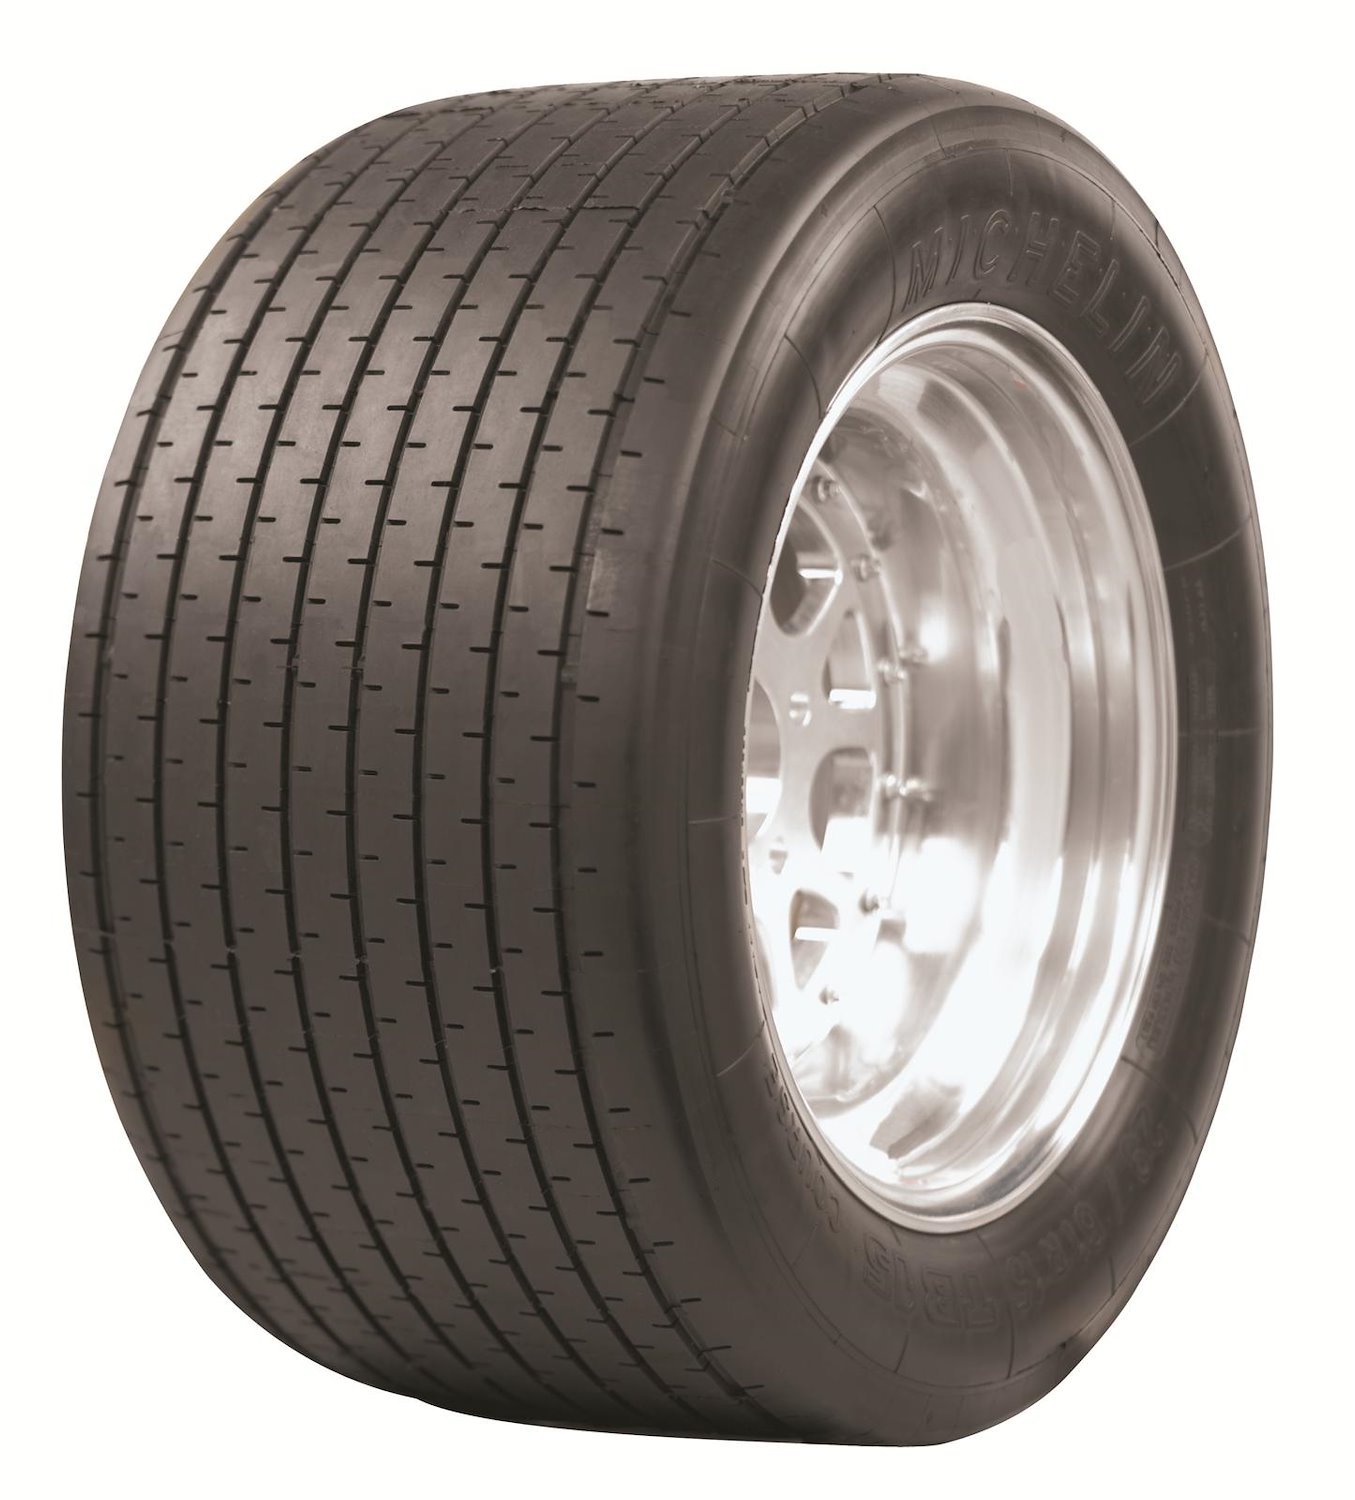 71224 Tire, Michelin TB15, 20/53-13